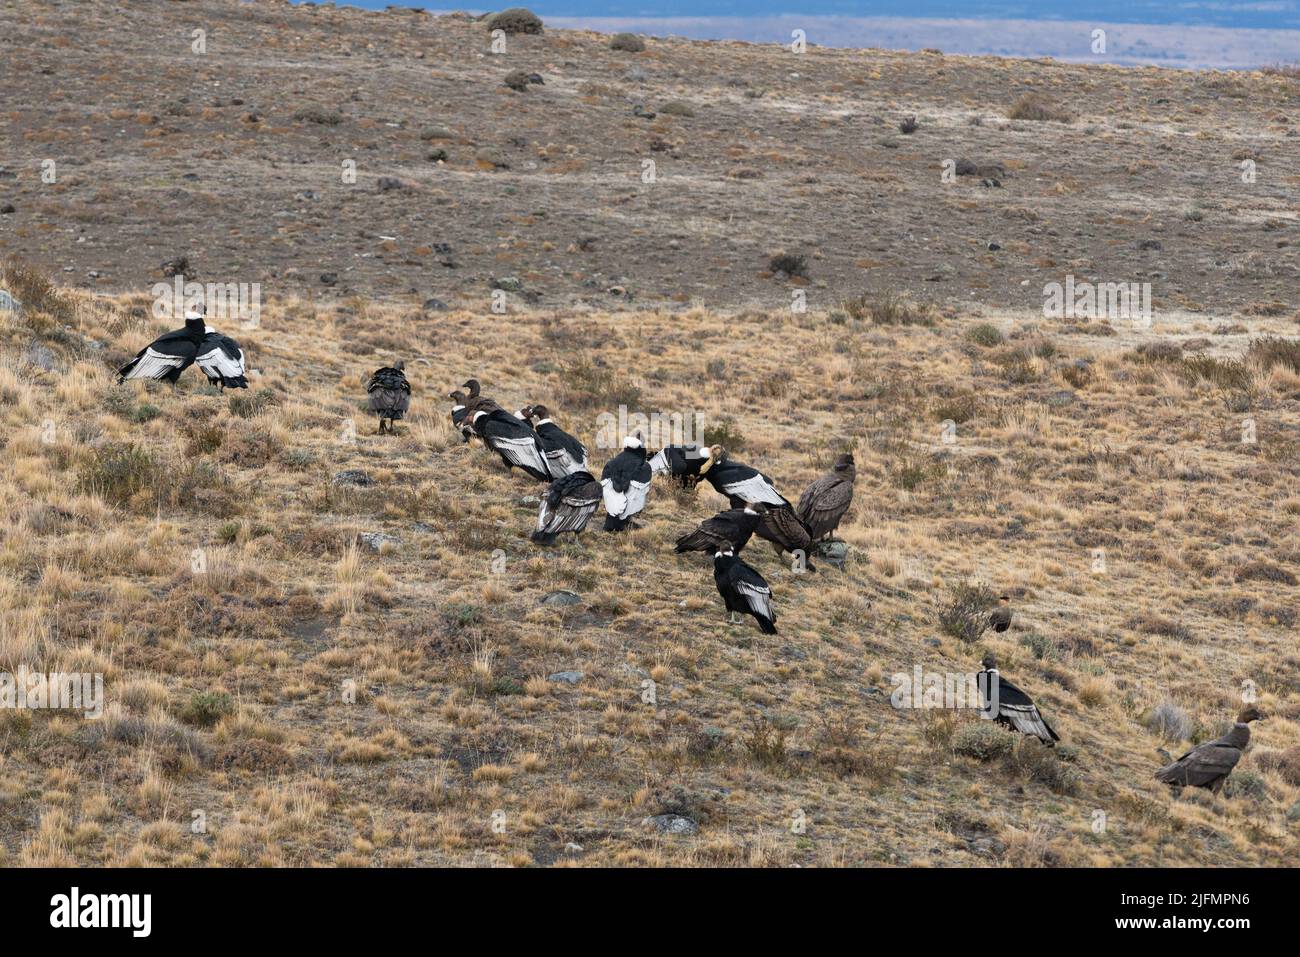 Un groupe de Condors andins (Vultur gryphus) se nourrissant d'une carcasse de Guanaco près de Torres del Paine N.P., Chili du Sud Banque D'Images